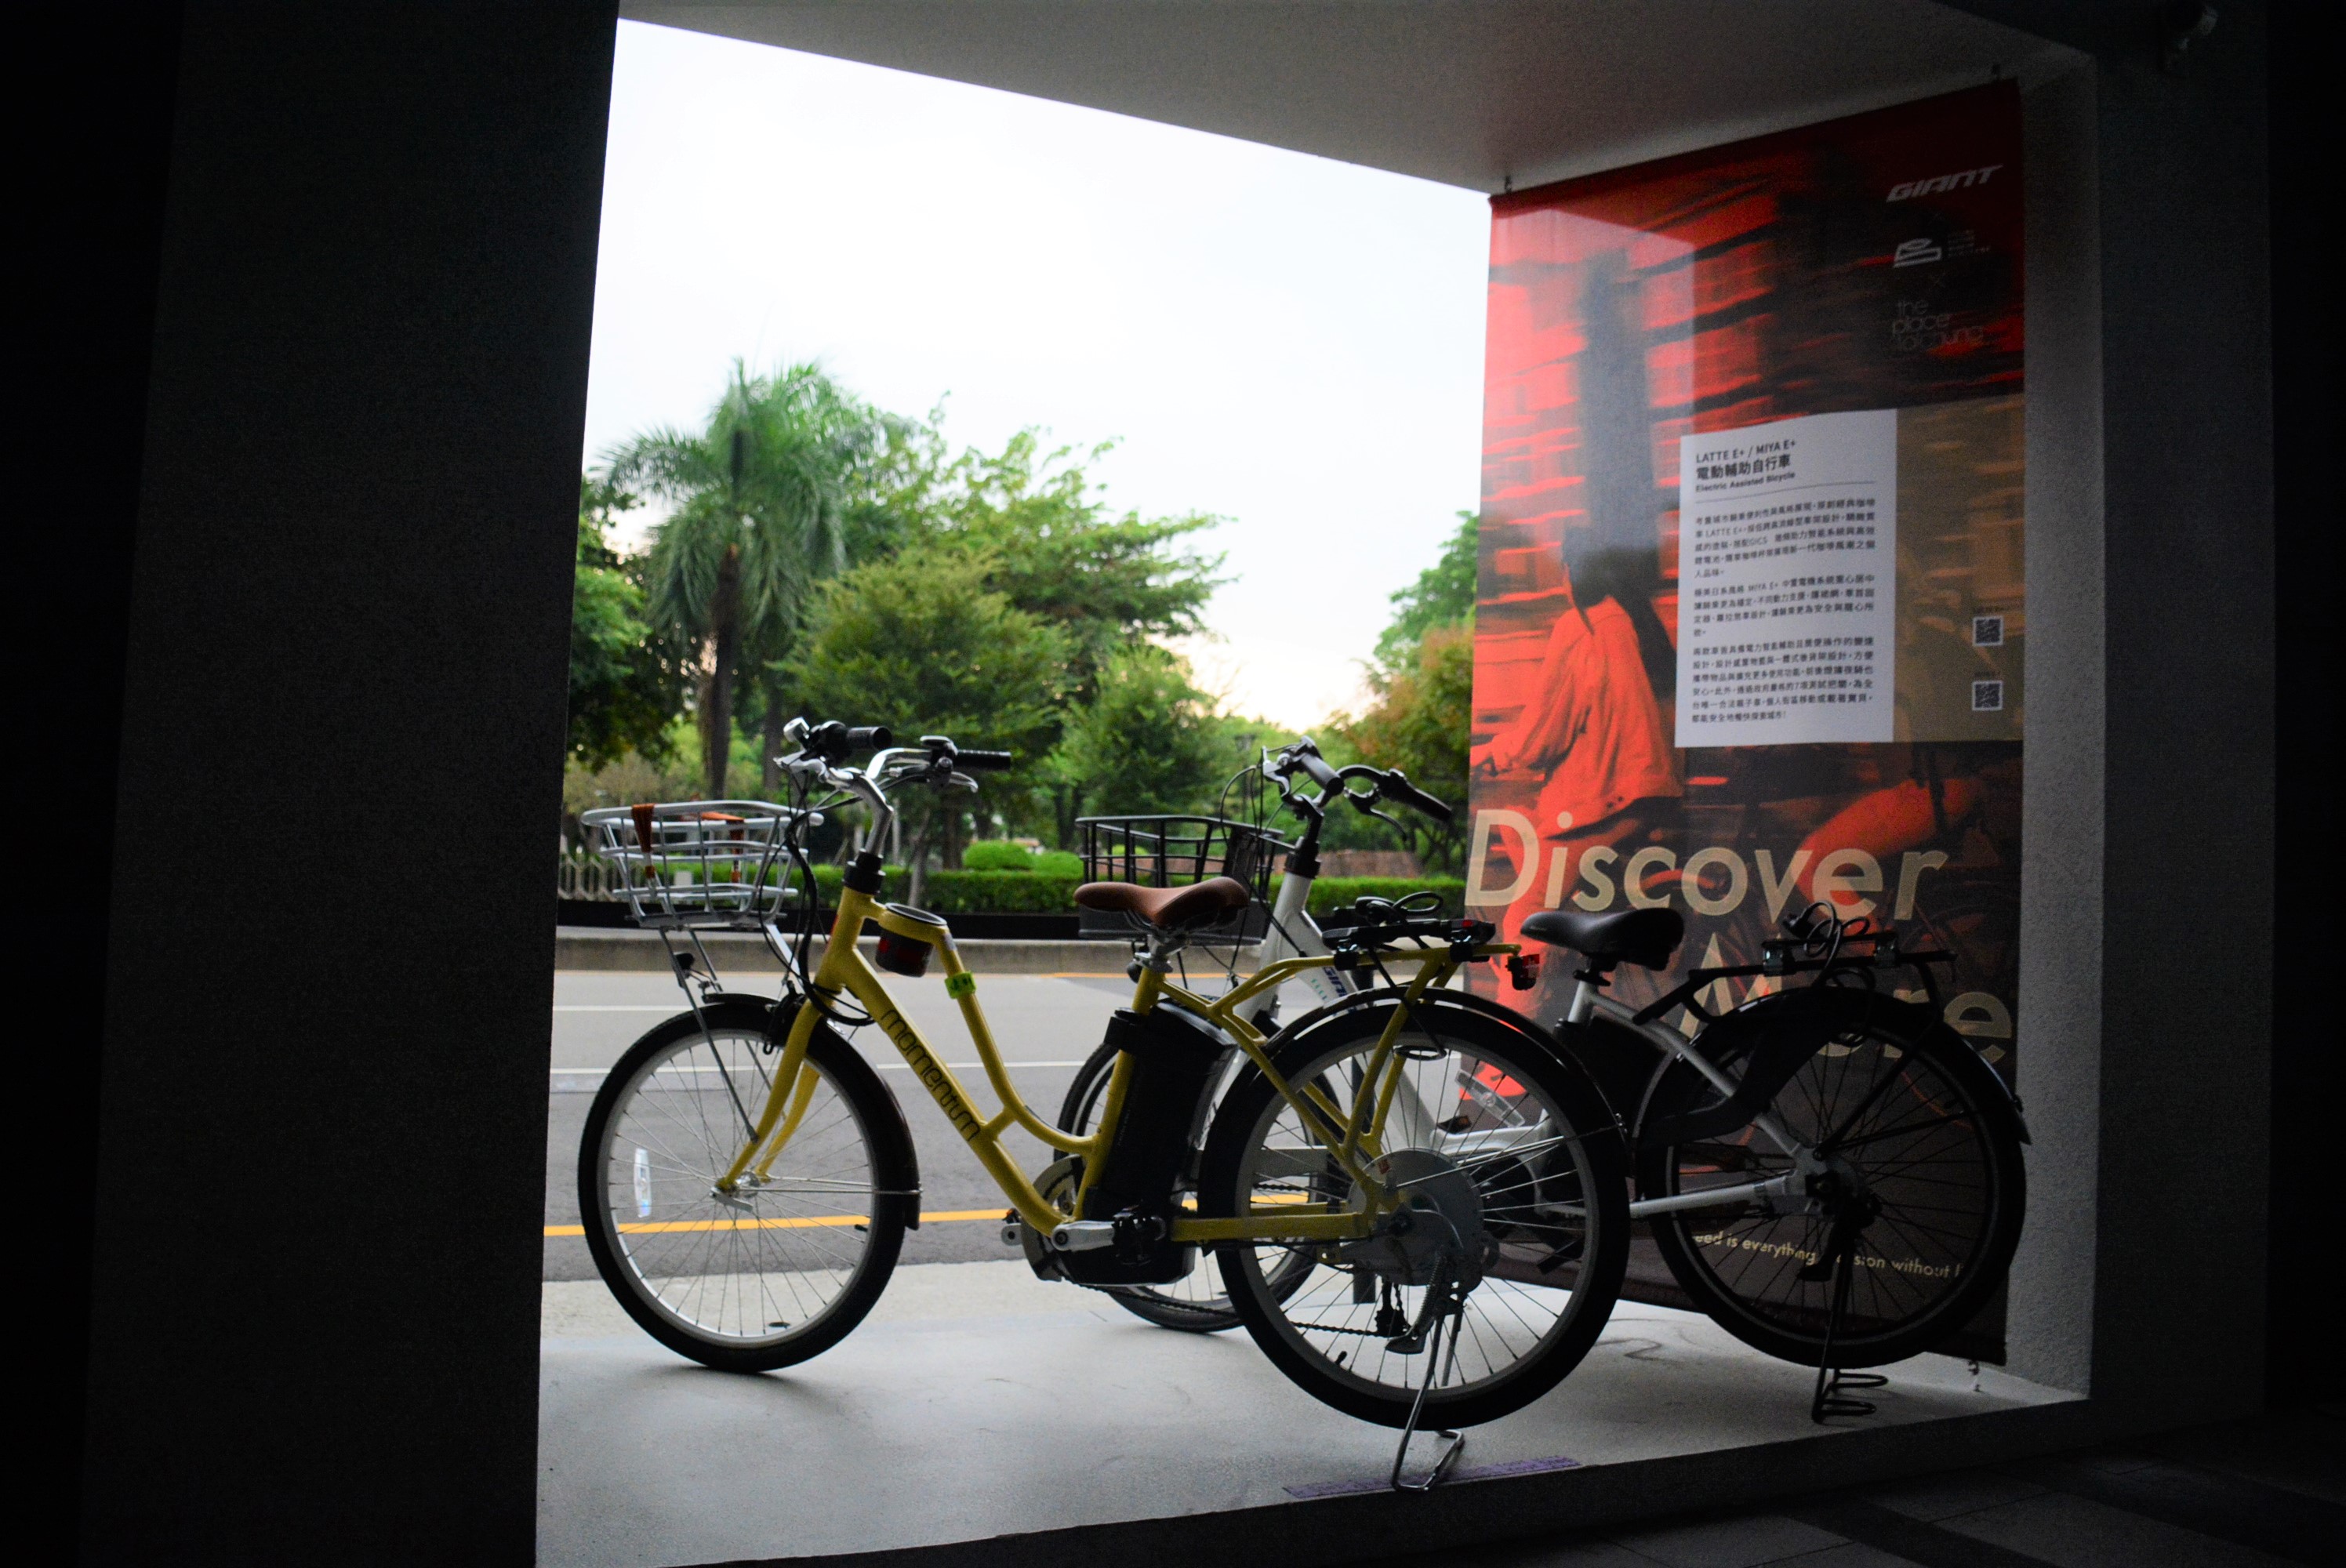 預約體驗捷安特電動輔助自行車探索街區更隨心所欲照片提供自行車文化探索館